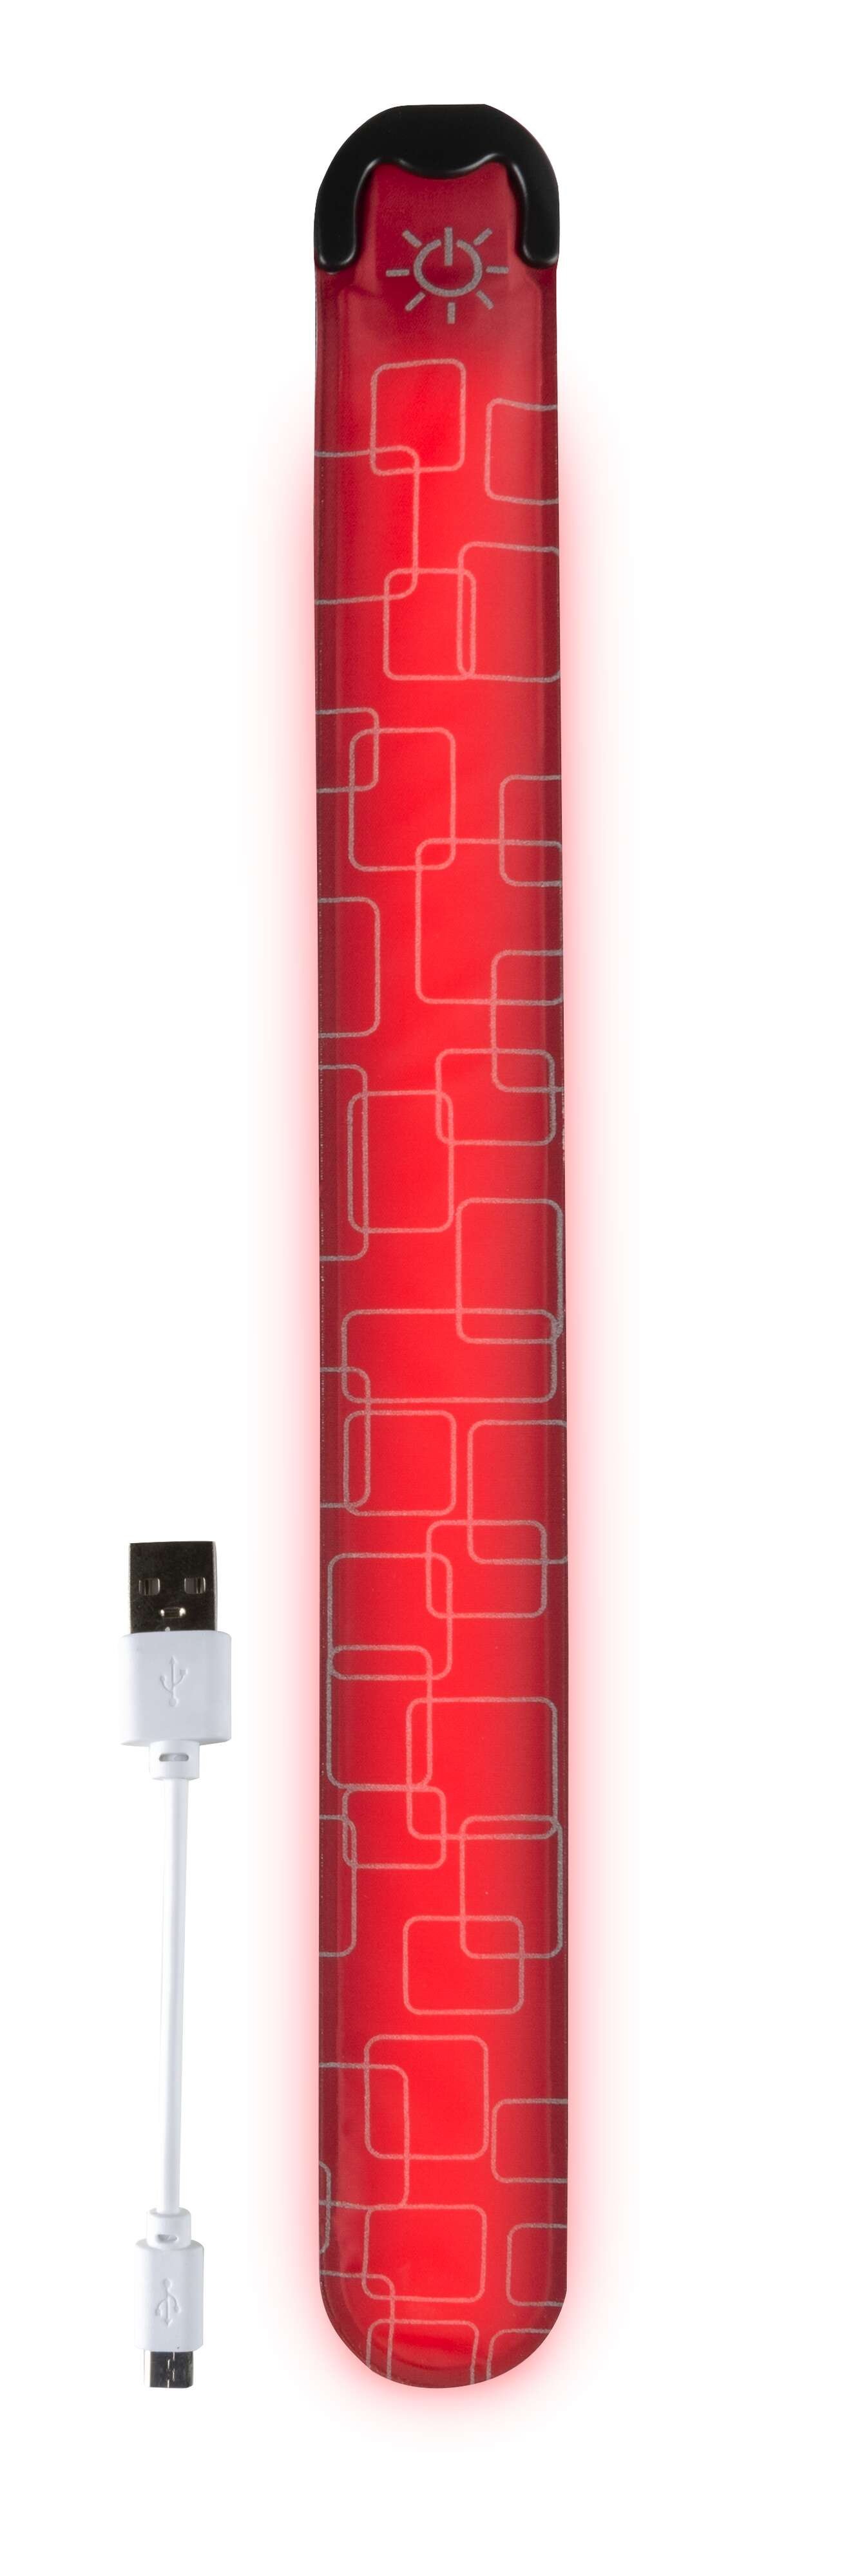 Benda LED, benda luminosa con opzione di ricarica USB 36x3,5 cm rosso